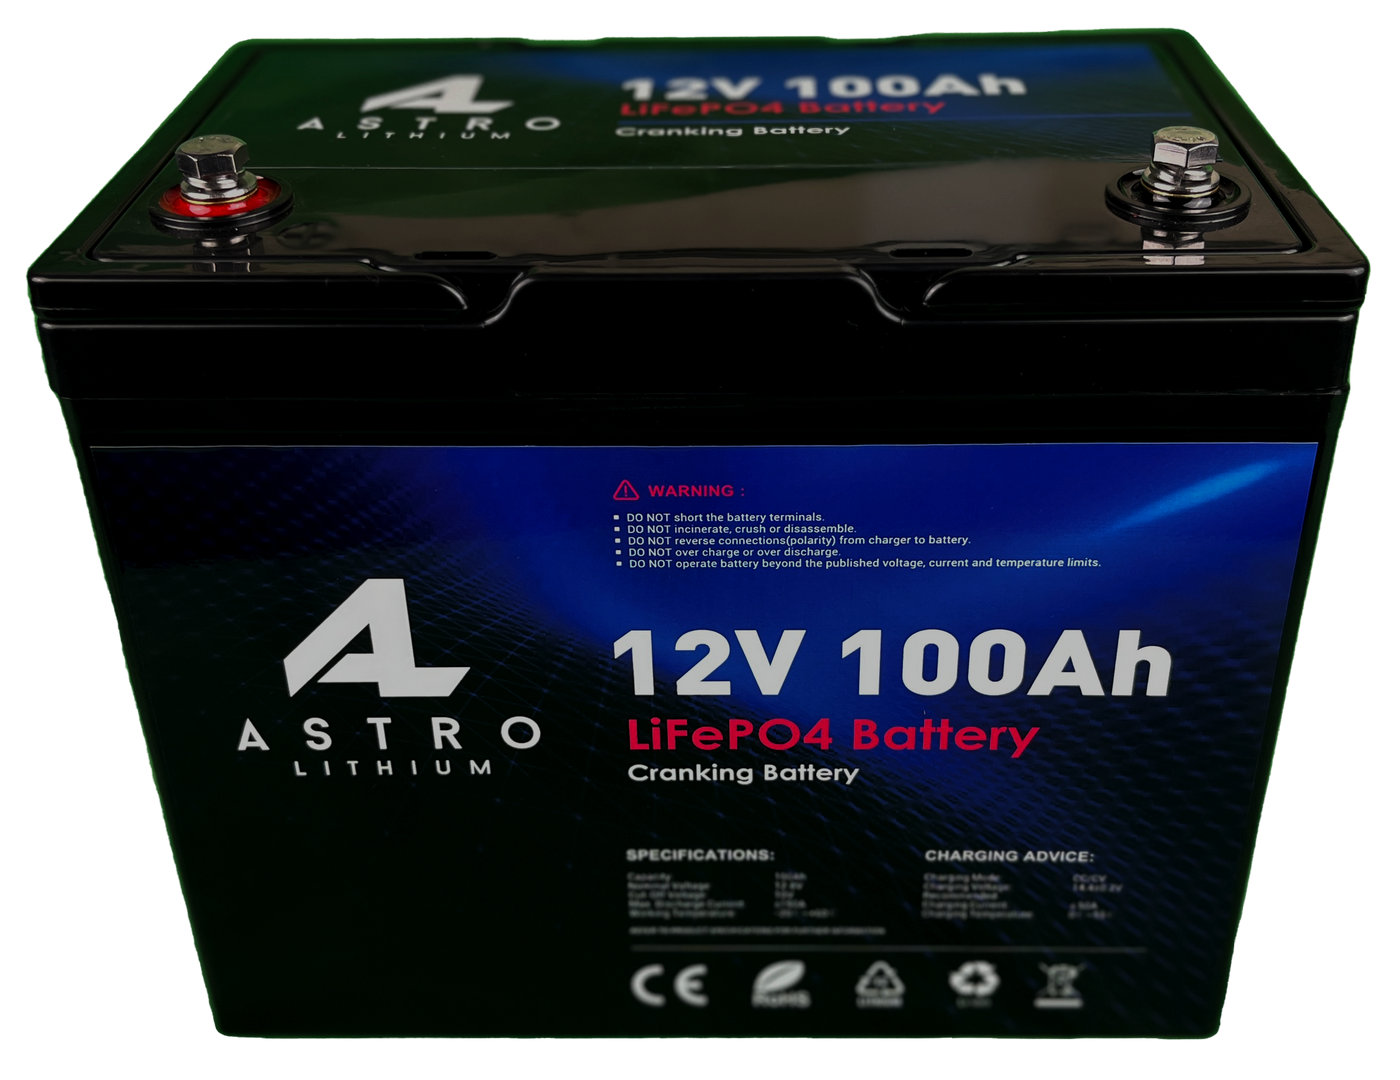 12V LiFePO4 Starter Battery, Lithium Cranking Battery, 100Ah